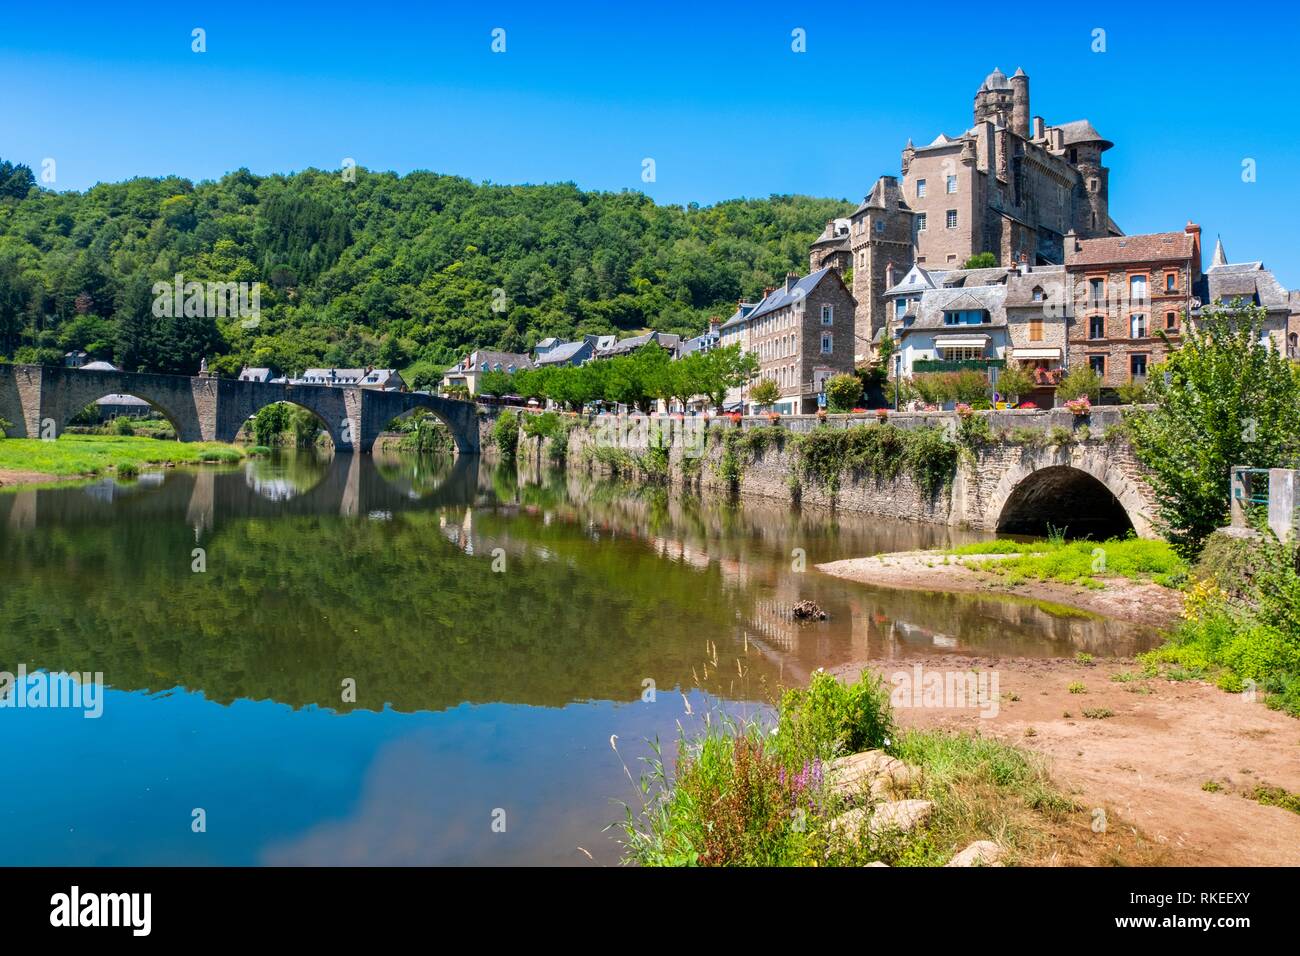 La France, l'Occitanie, Aveyron, Estaing (Occitan : Estanh) est une commune française, située dans le département de l'Aveyron dans le sud de la France. Situé dans le nord de l'Aveyron Banque D'Images